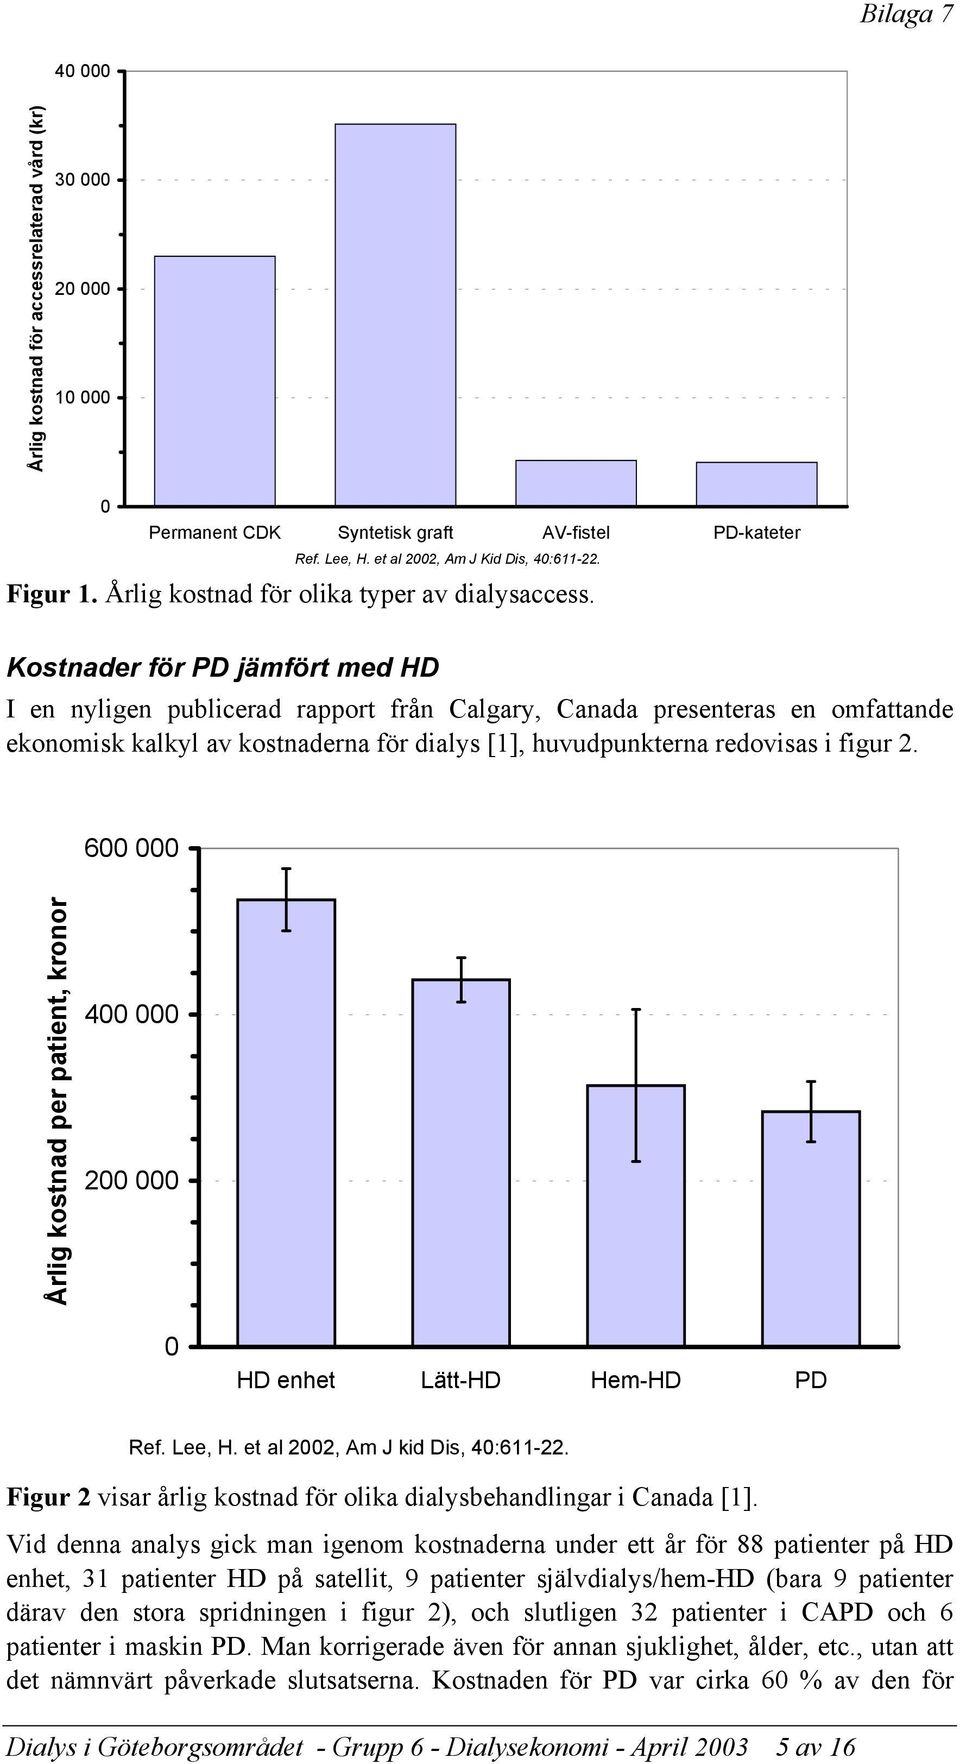 Kostnader för PD jämfört med HD I en nyligen publicerad rapport från Calgary, Canada presenteras en omfattande ekonomisk kalkyl av kostnaderna för dialys [1], huvudpunkterna redovisas i figur 2.